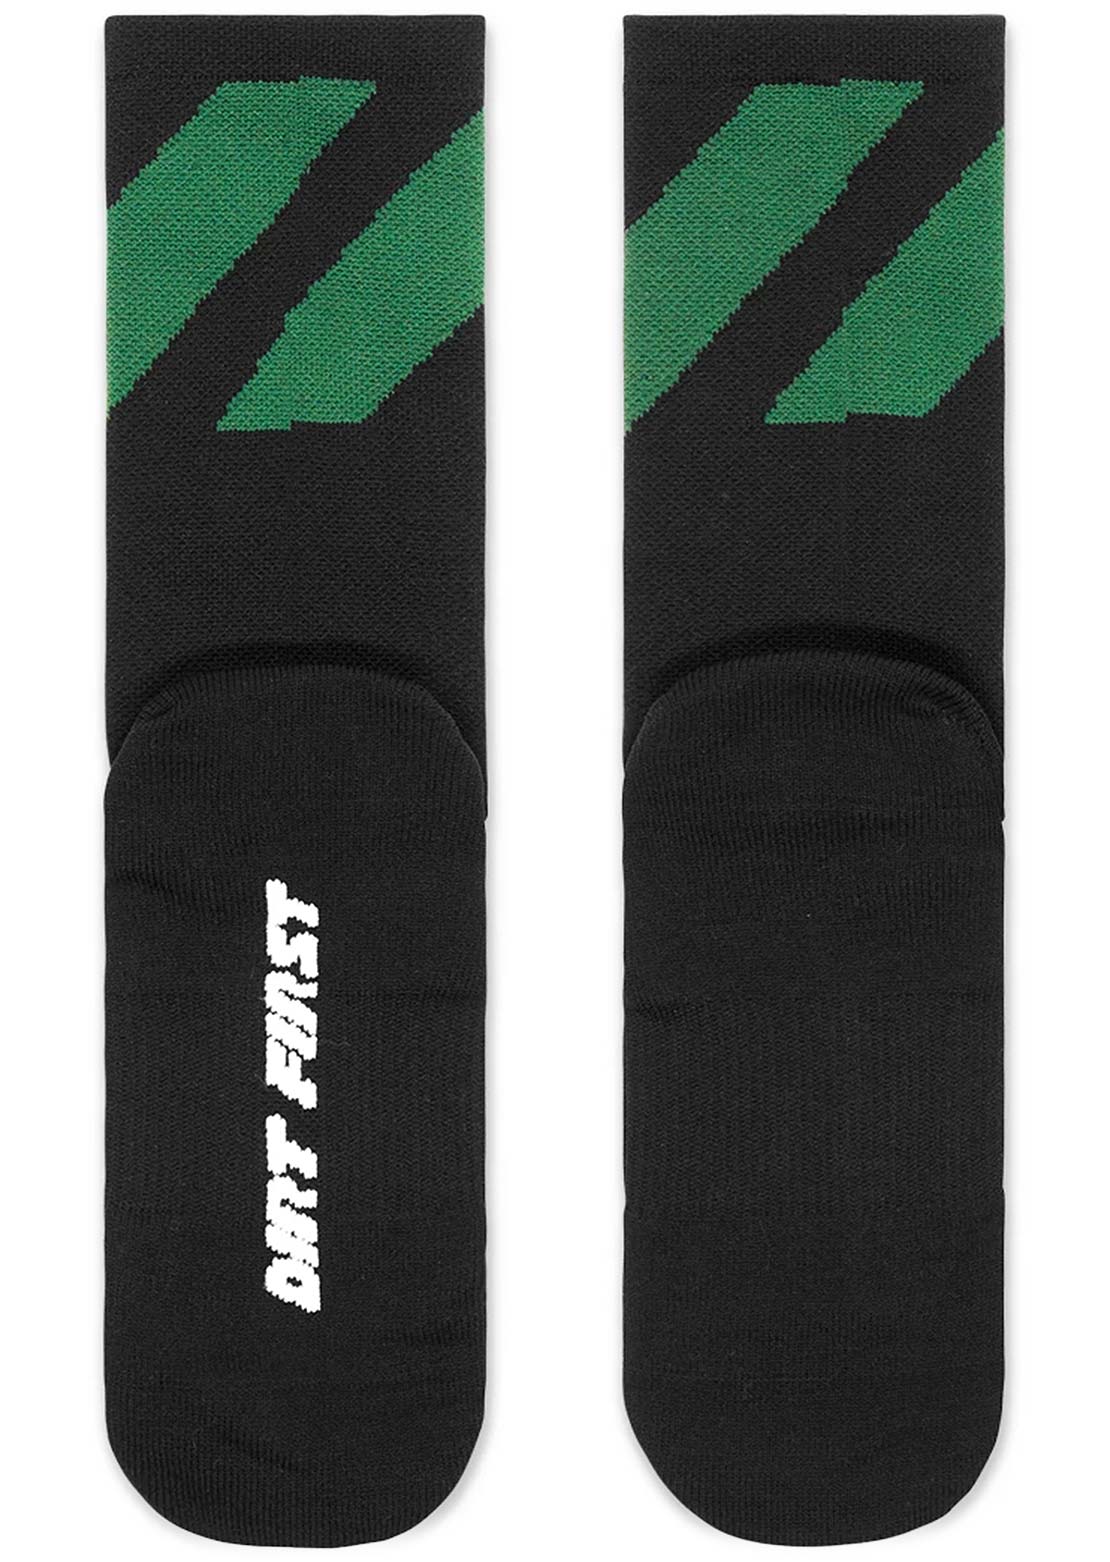 Norco Team Socks Black/Green